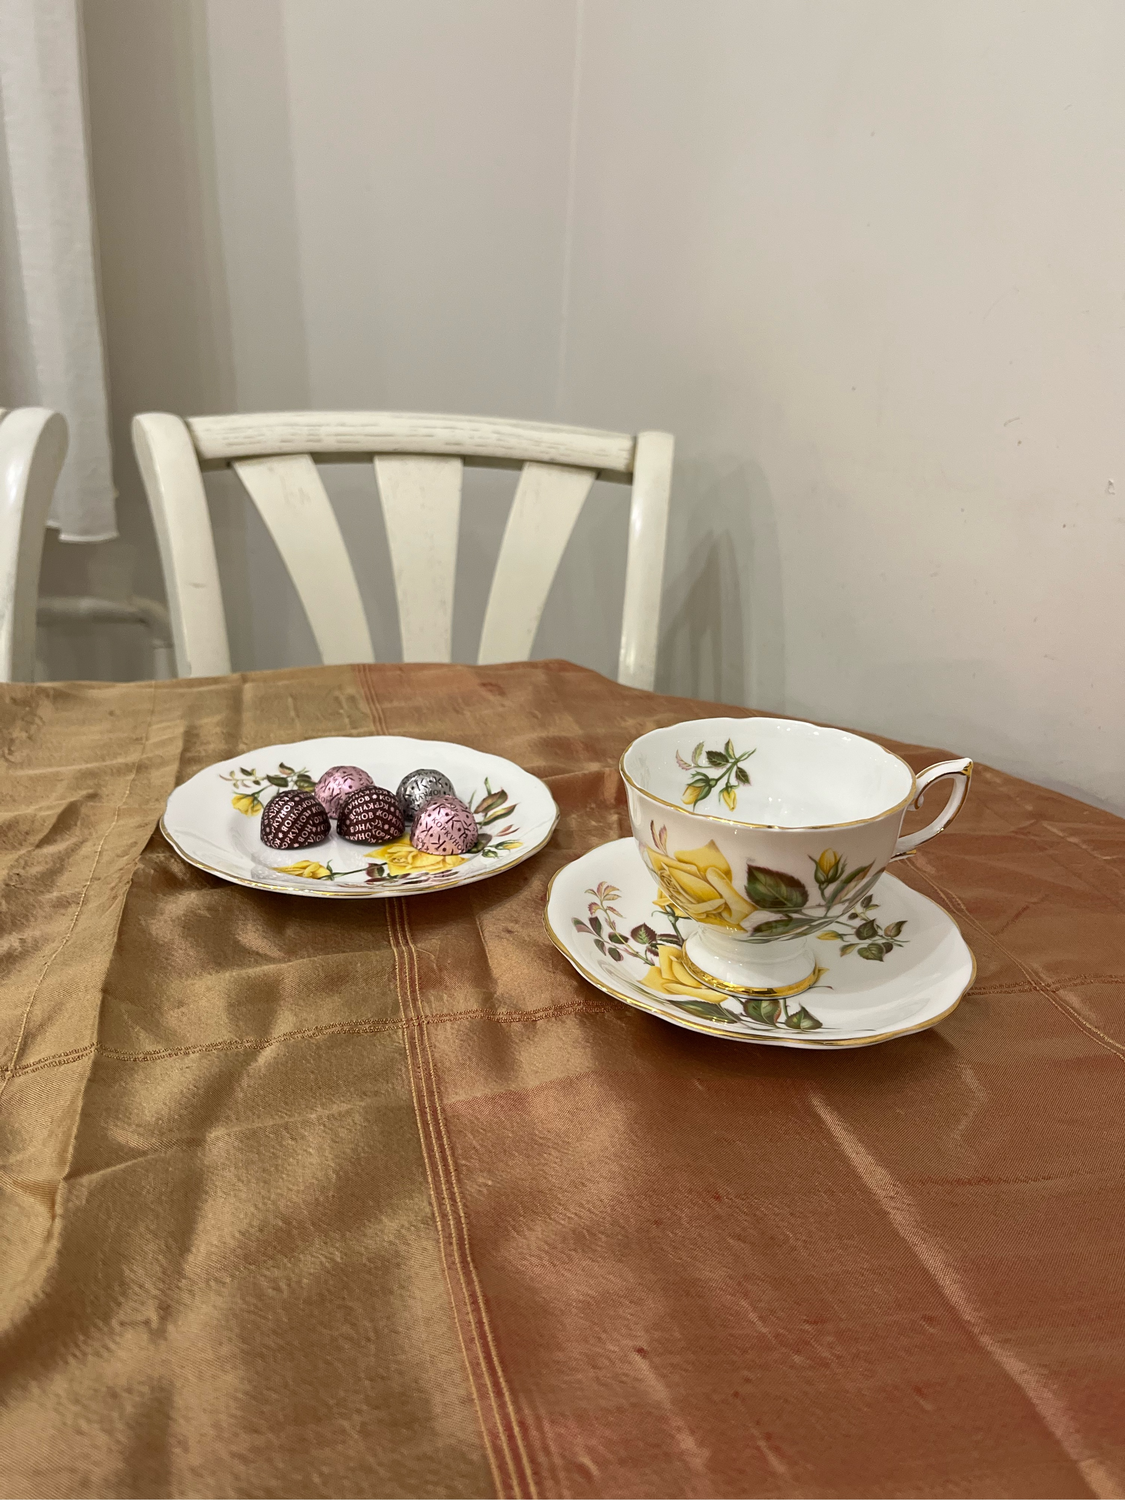 Фото №1 к отзыву покупателя татьяна о товаре Винтаж: Чайное трио с желтой розой от Royal Standard/Англия